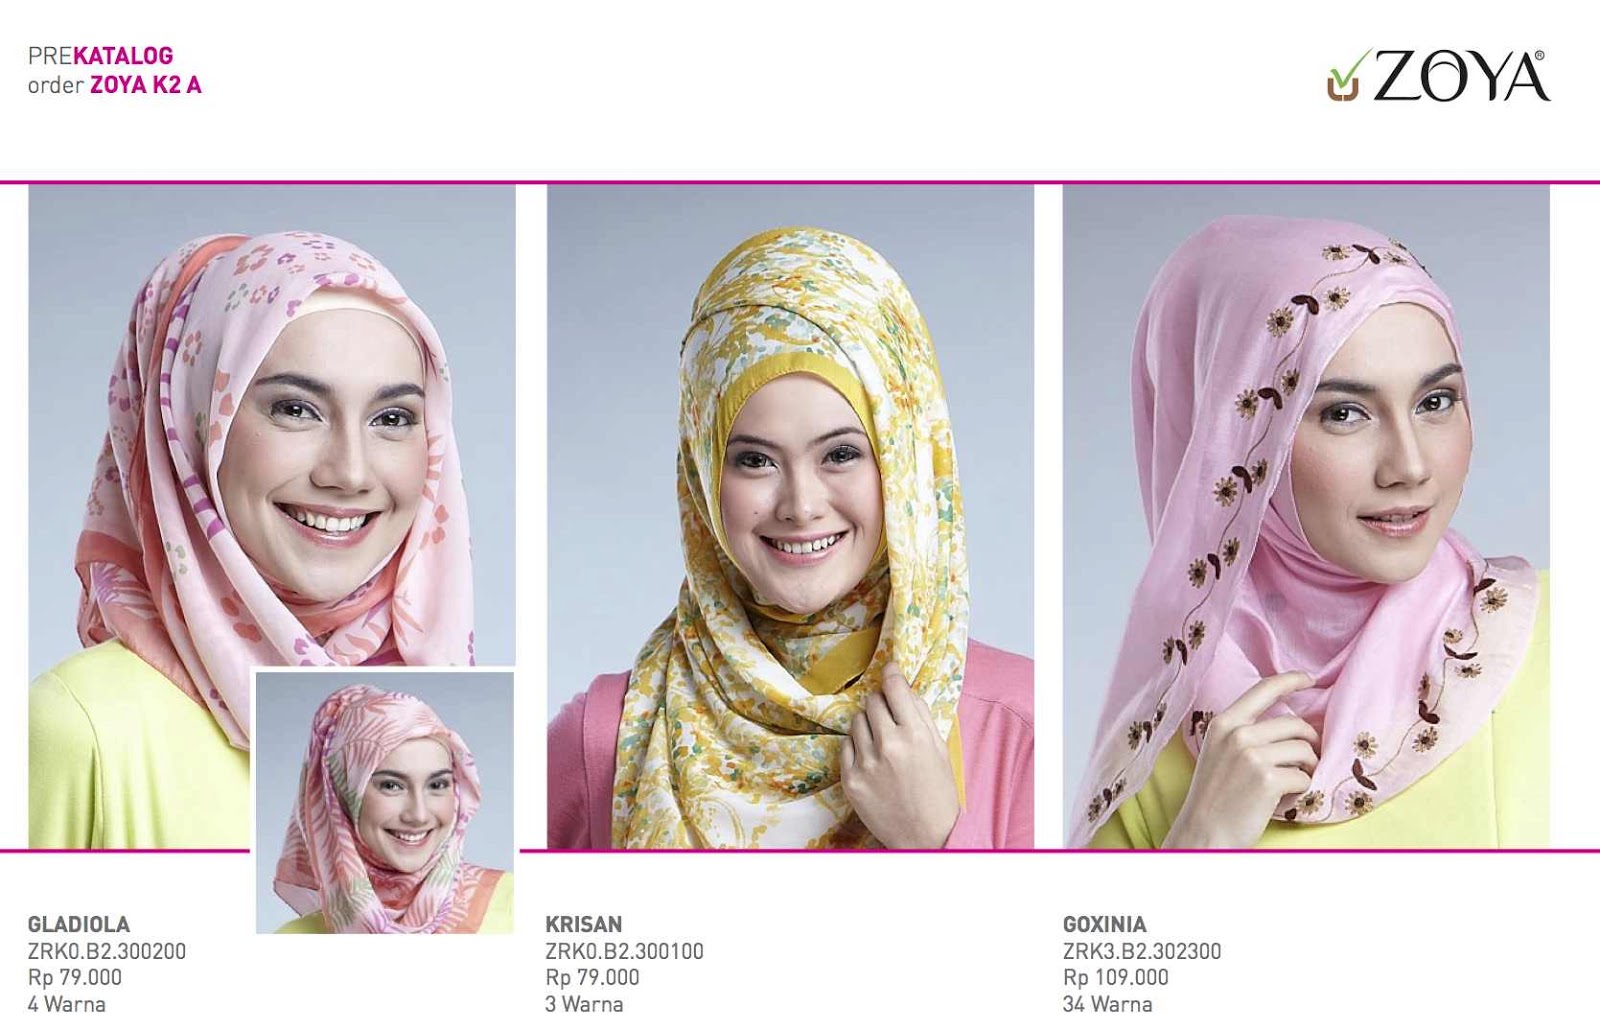 87 Gambarnya Download Tutorial Hijab Zoya Pesta Untuk Kamu